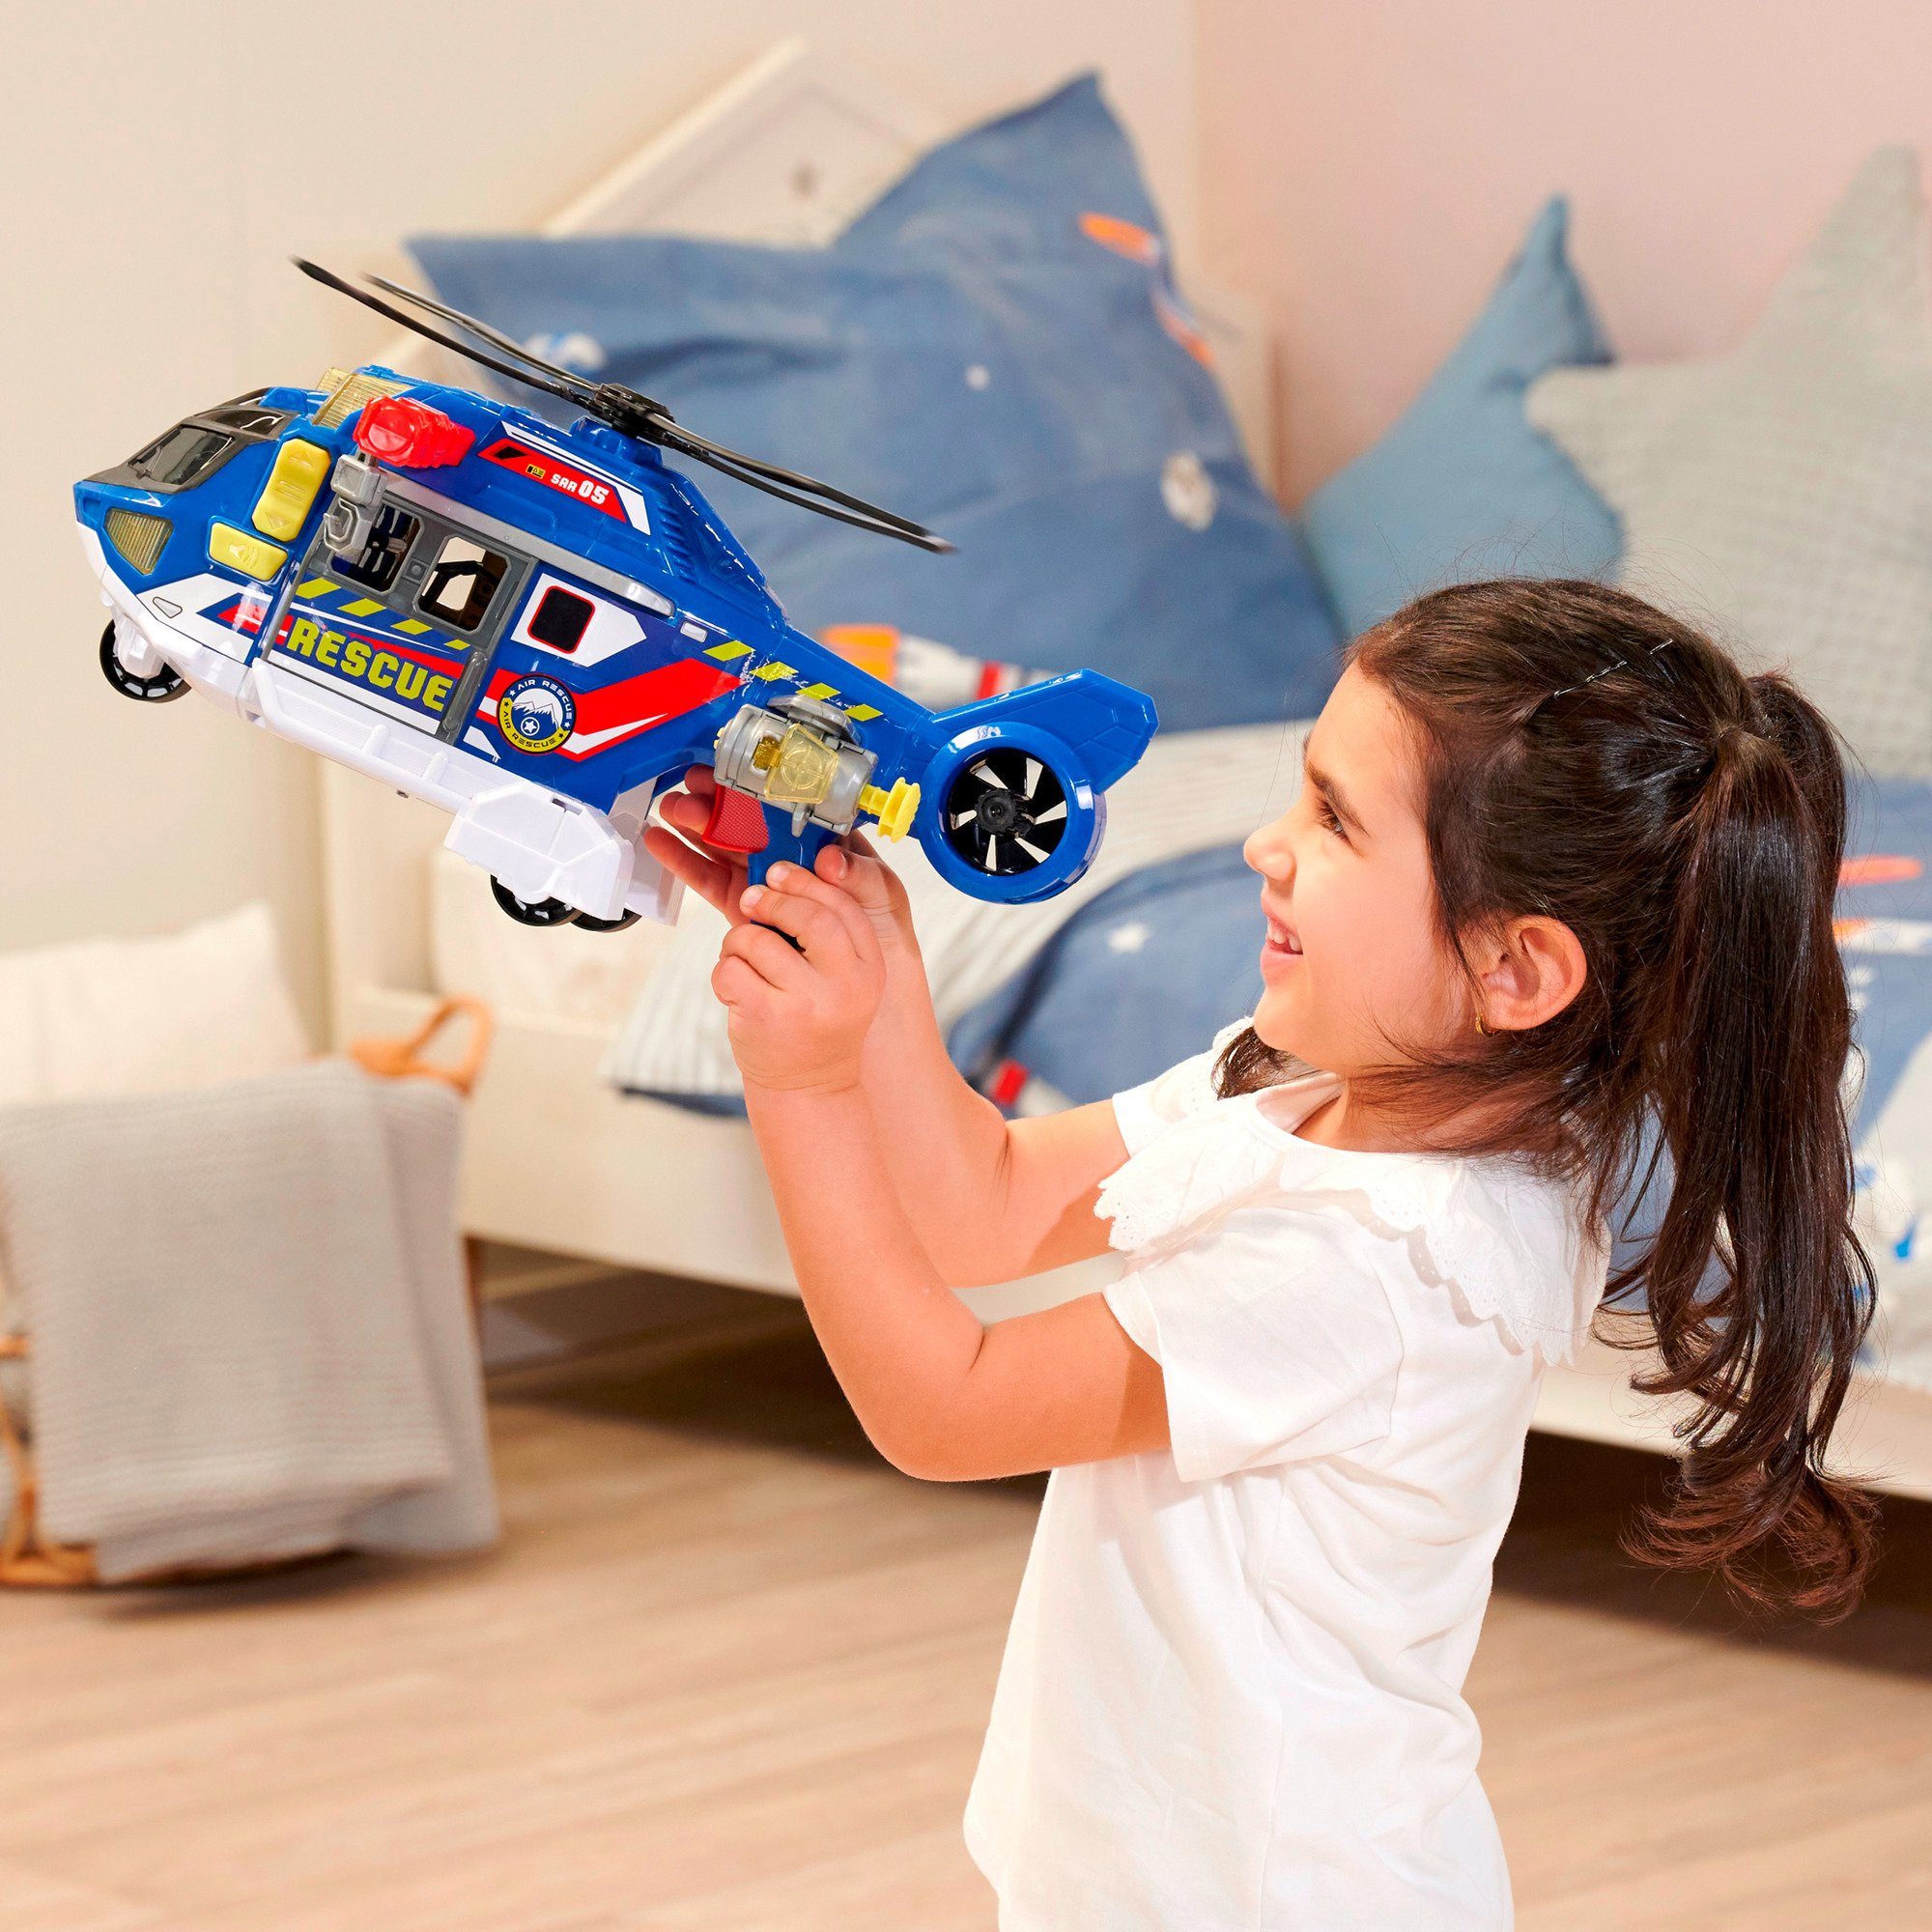 Dickie Toys Spielzeug-Auto Helicopter, Dickie Spielfahrzeug